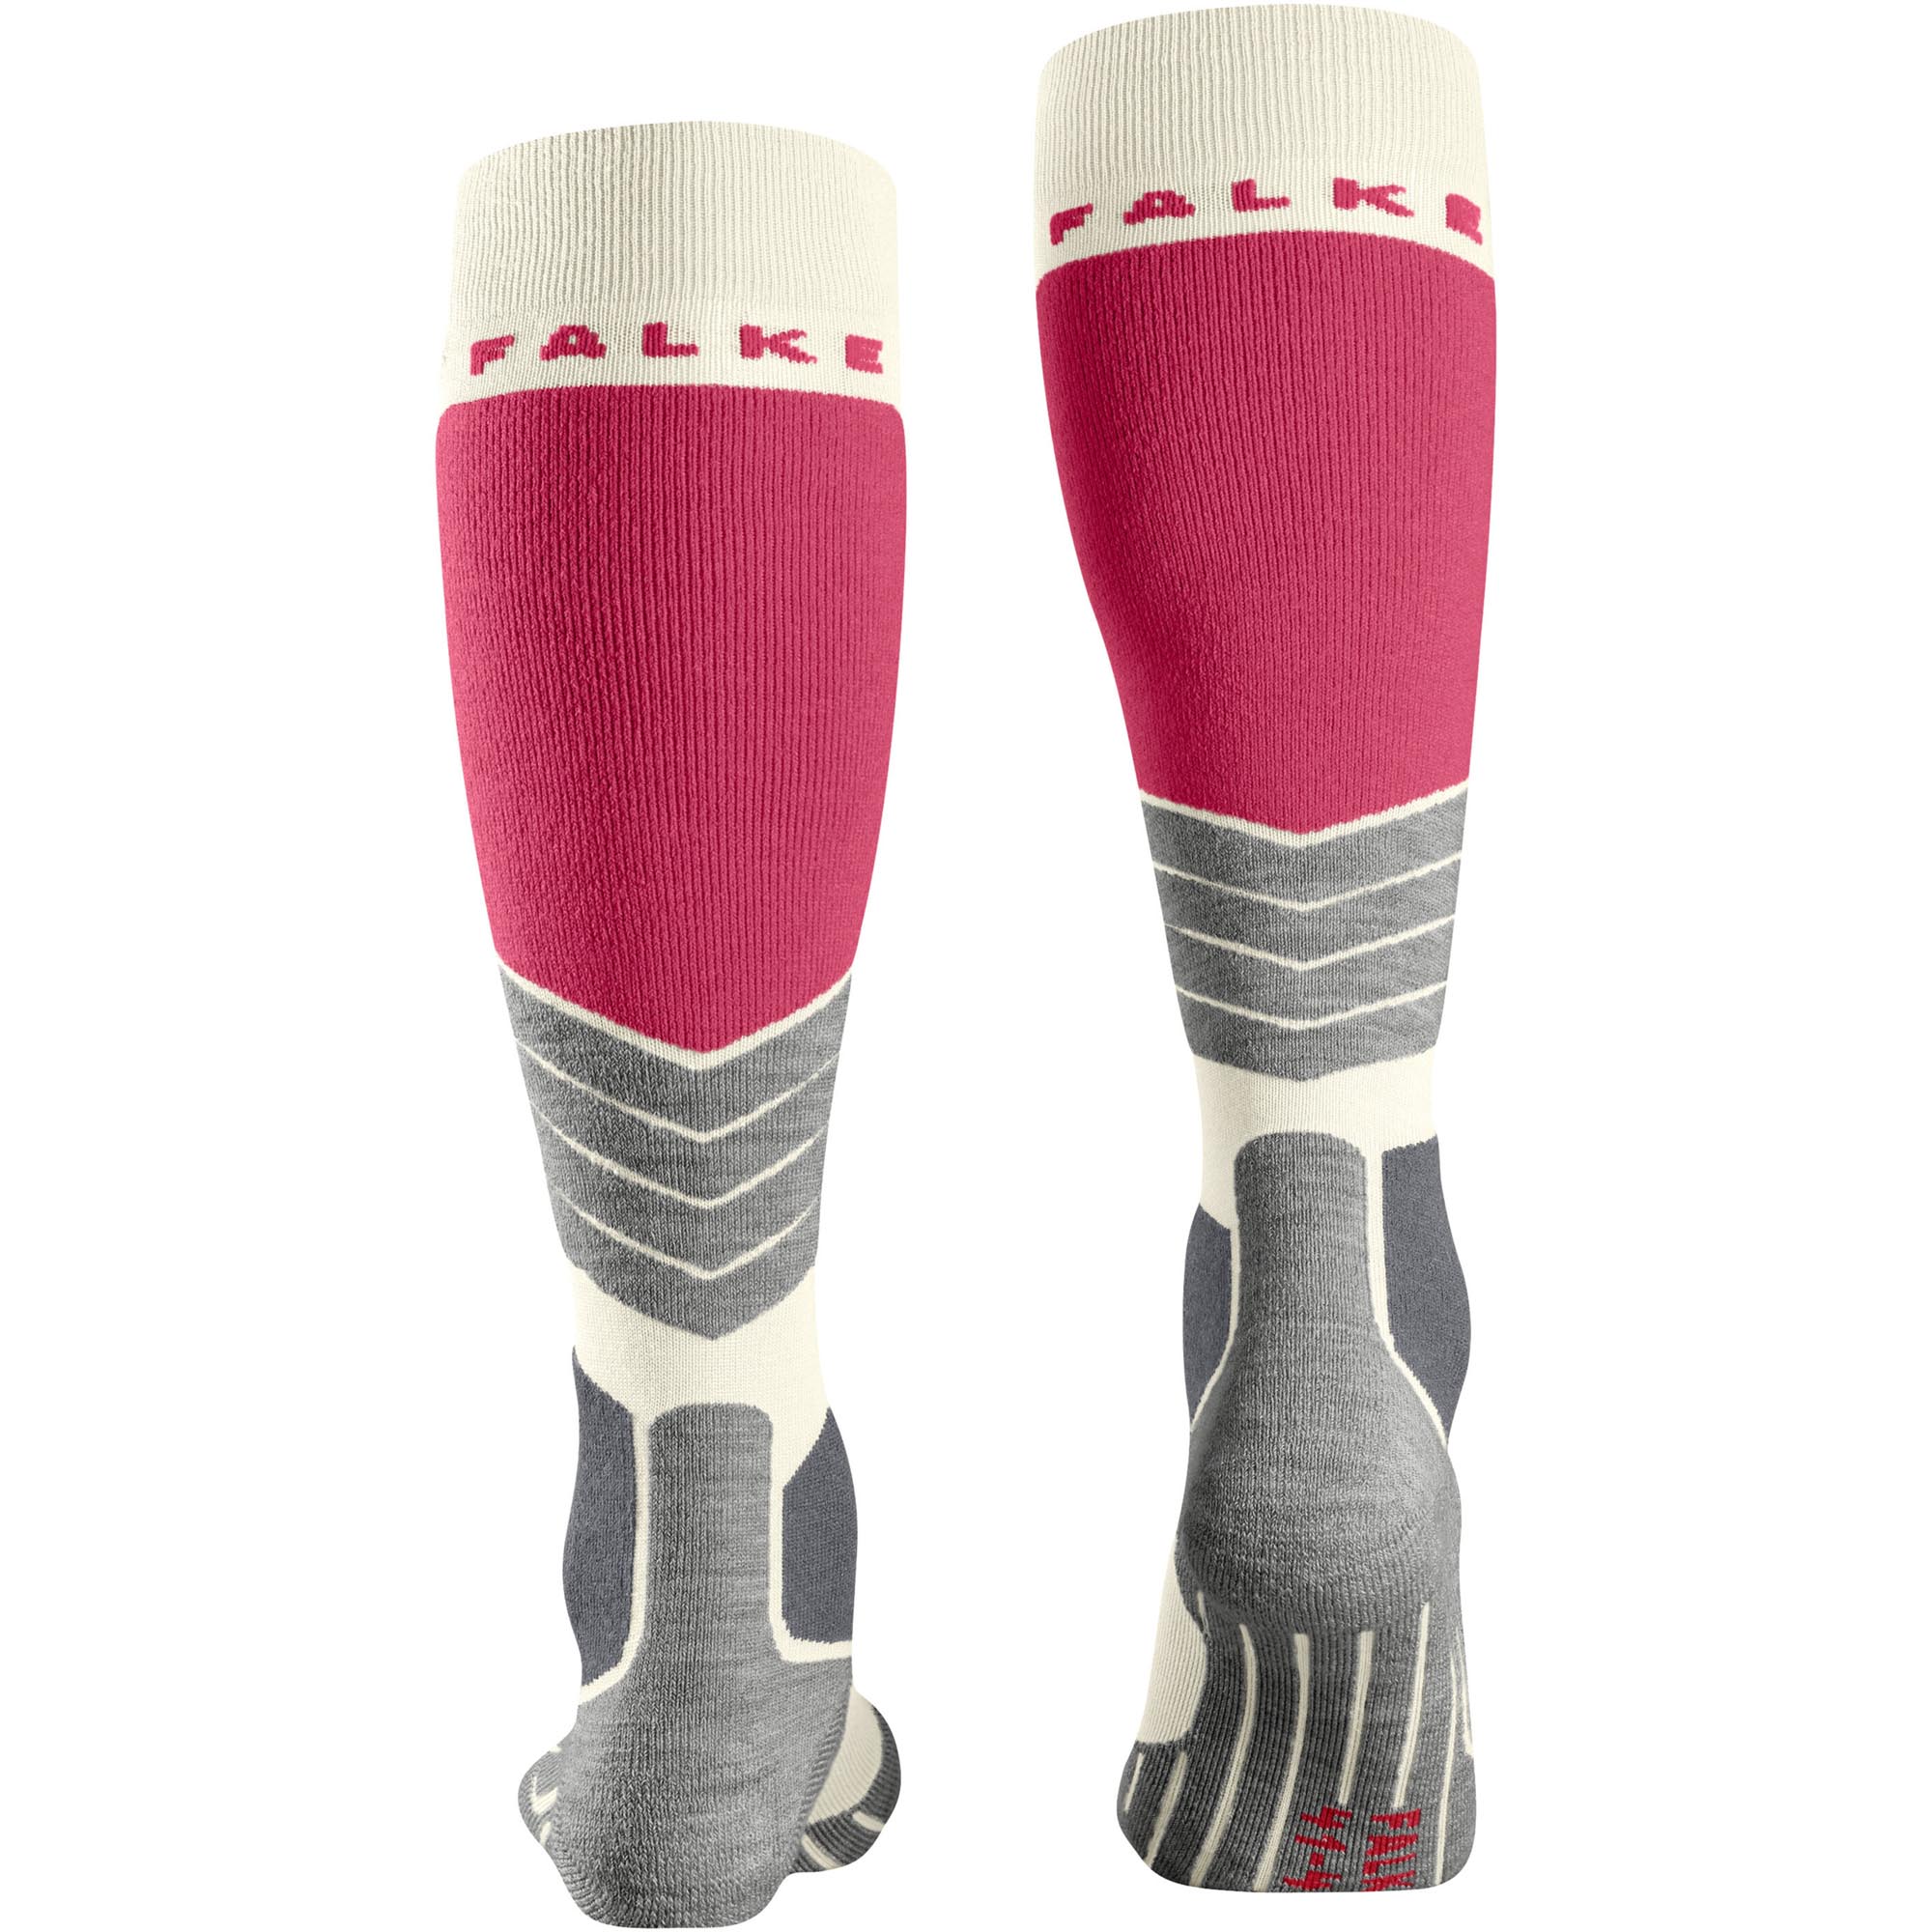 Falke SK2 Intermediate Women's Ski Socks